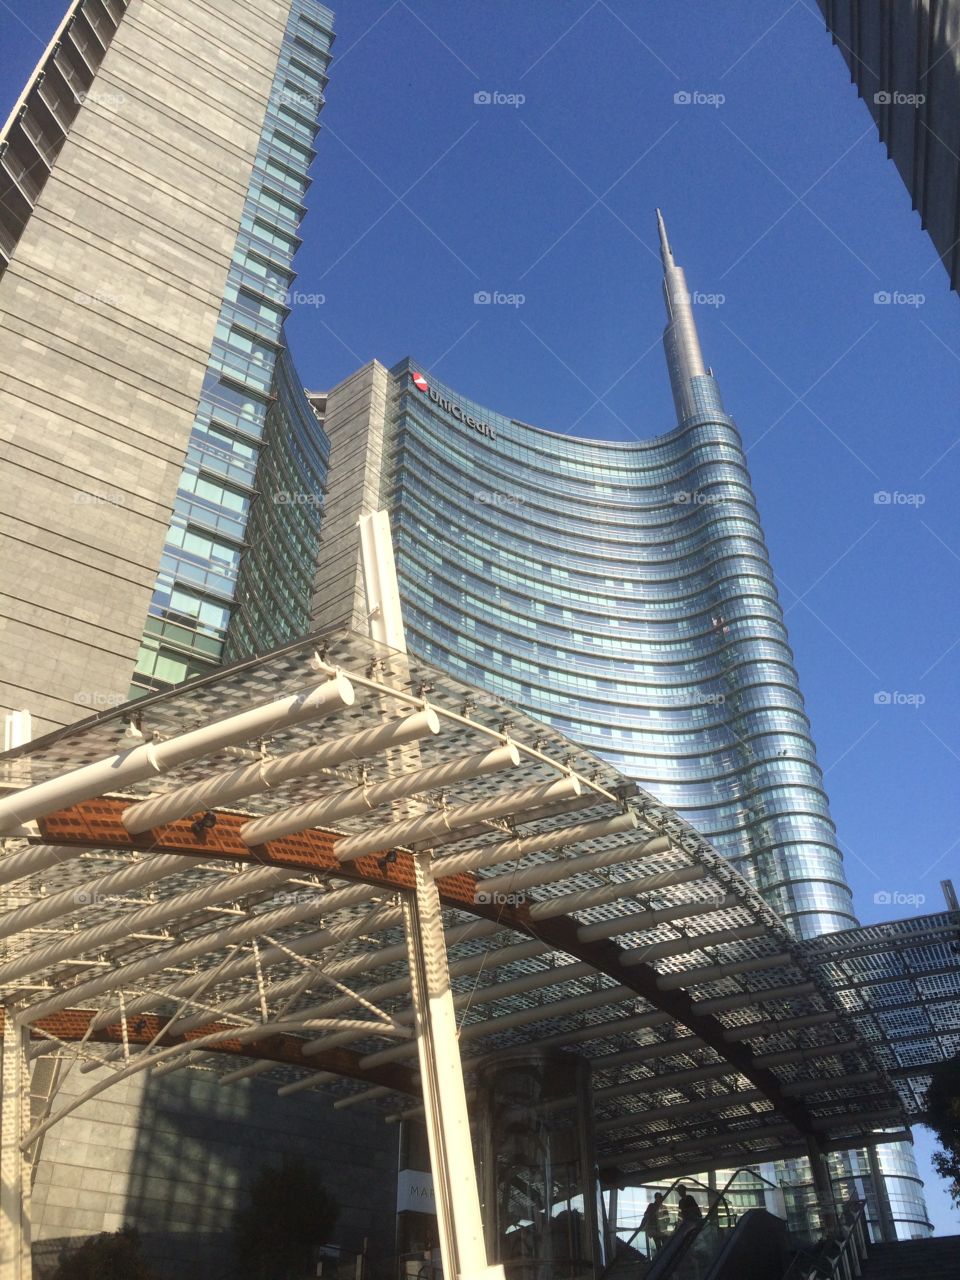 Tower in Milan 